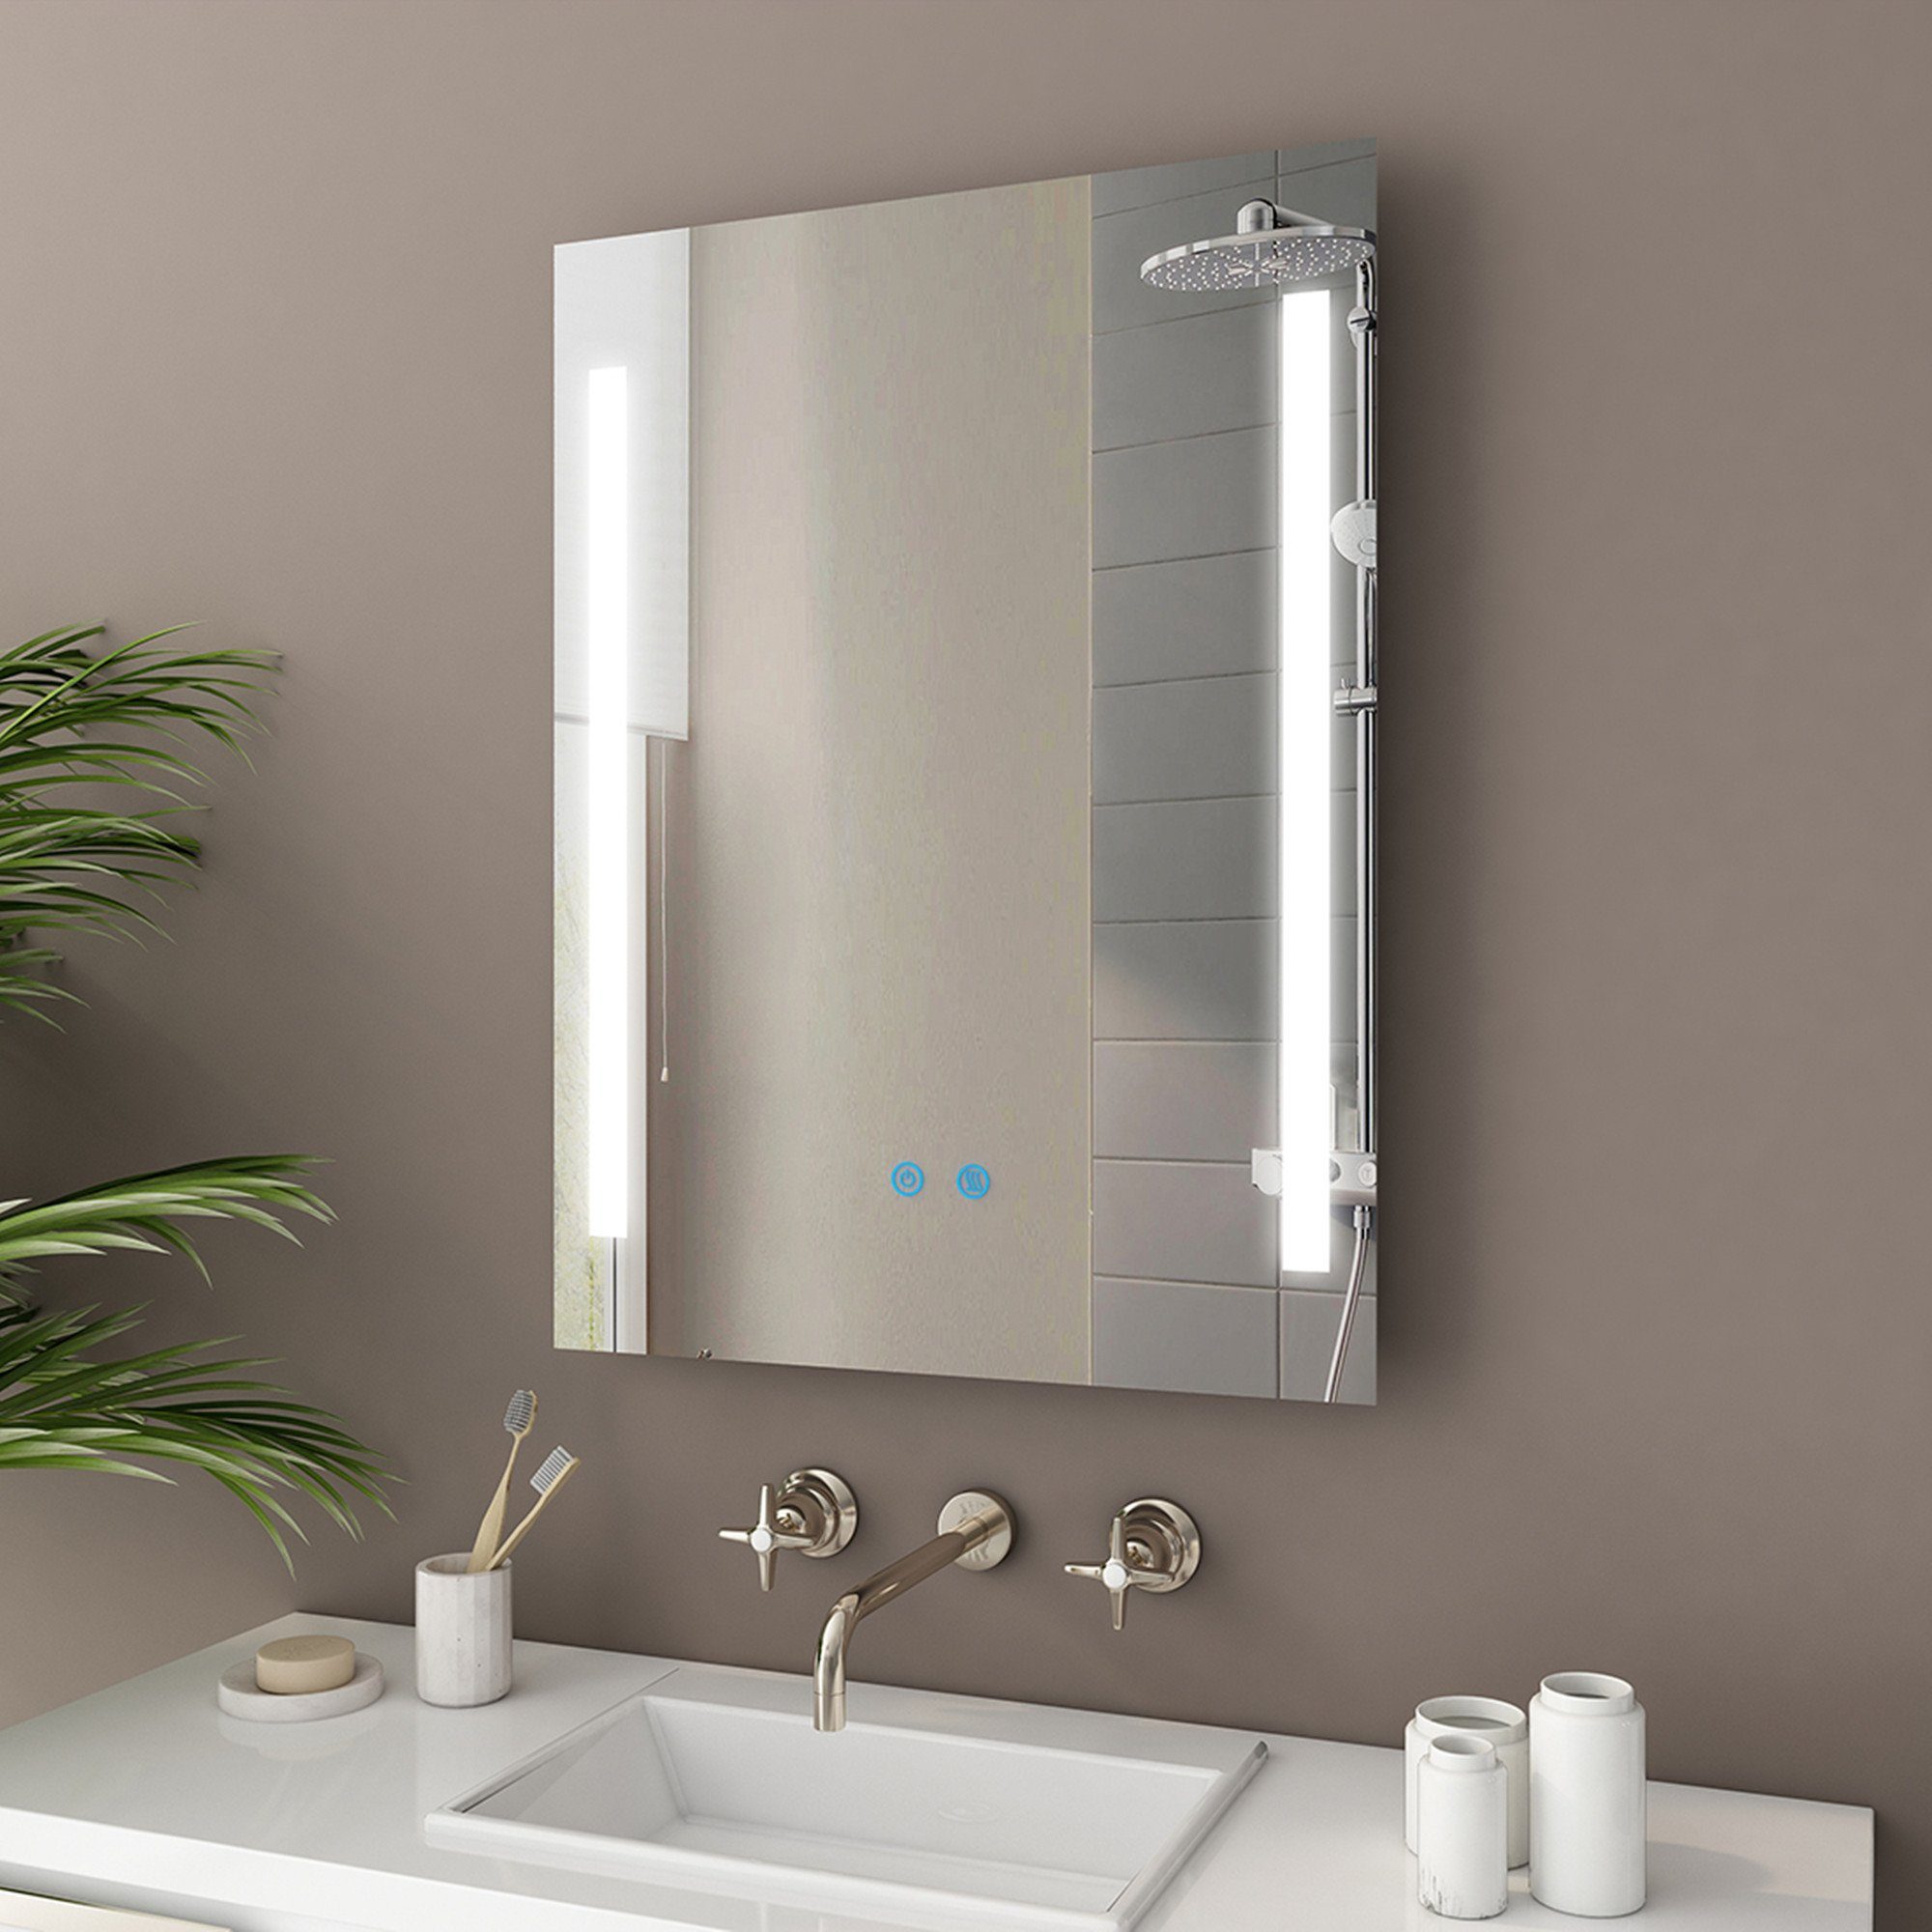 IMPTS Badspiegel »Badezimmerspiegel,LED Badspiegel mit  Beleuchtung,Wandspiegel mit Touchschalter«,  IP44,Energiesparend,Dimmbar,neutralweiß